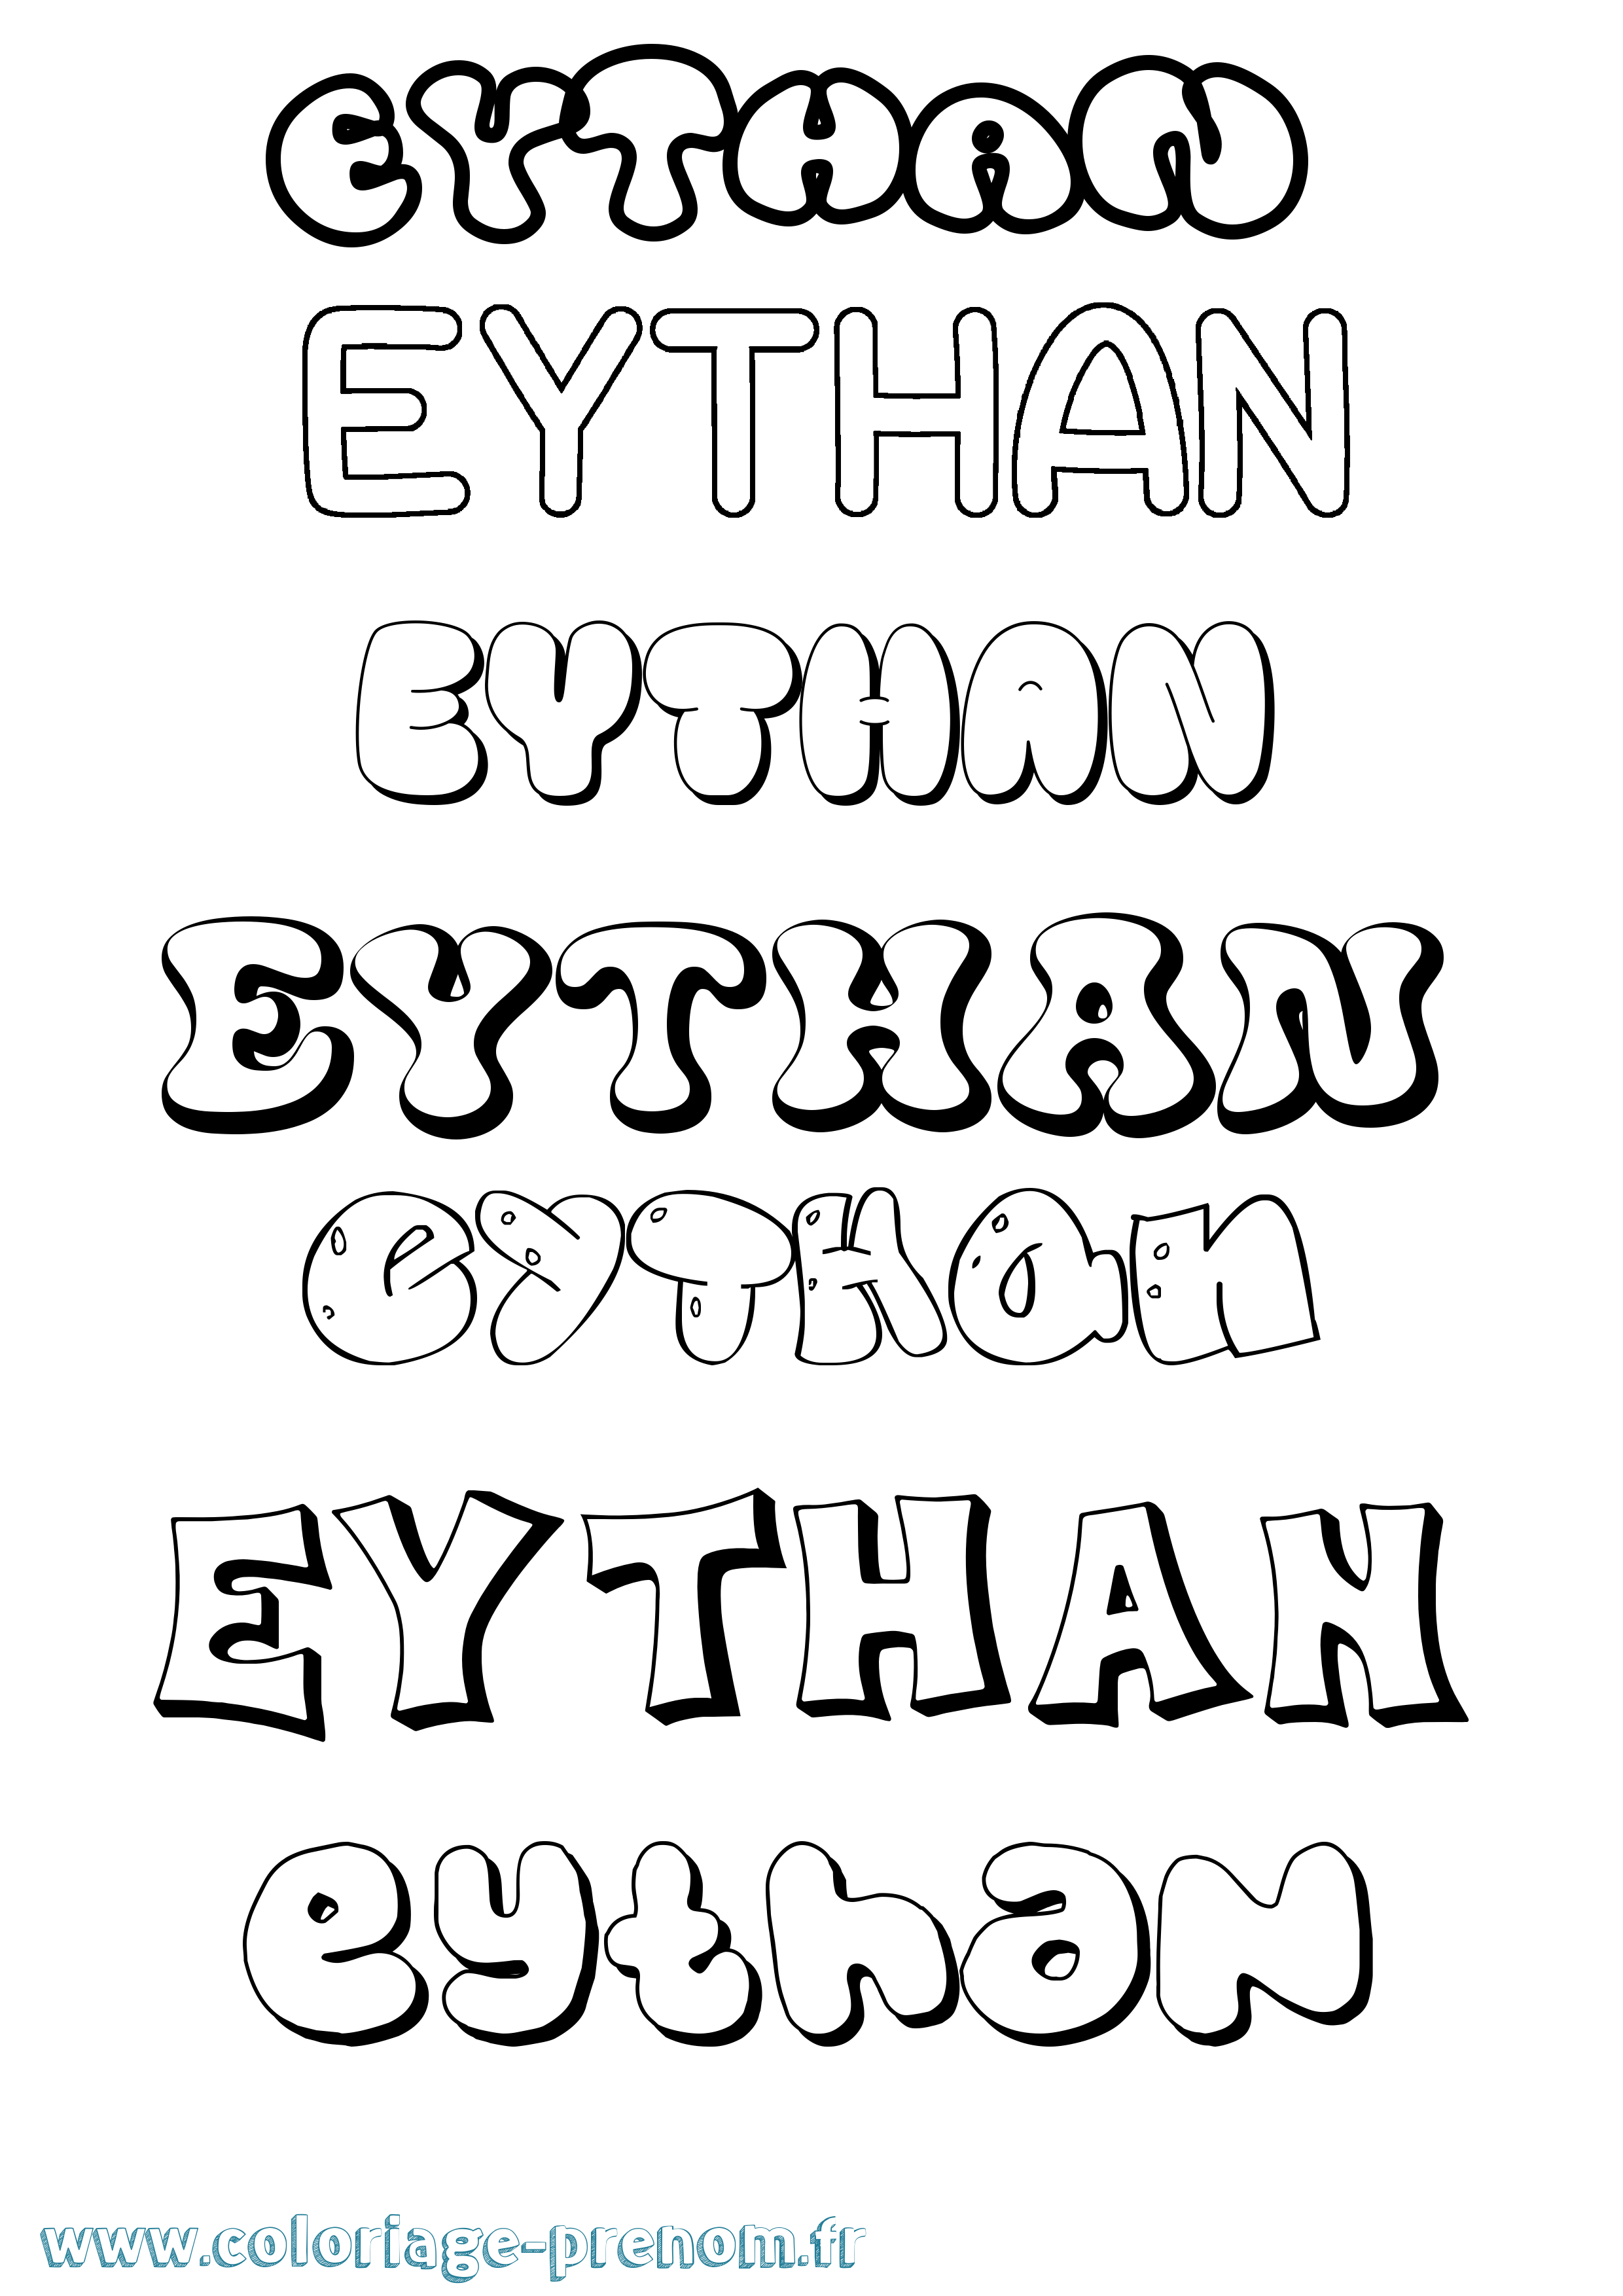 Coloriage prénom Eythan Bubble